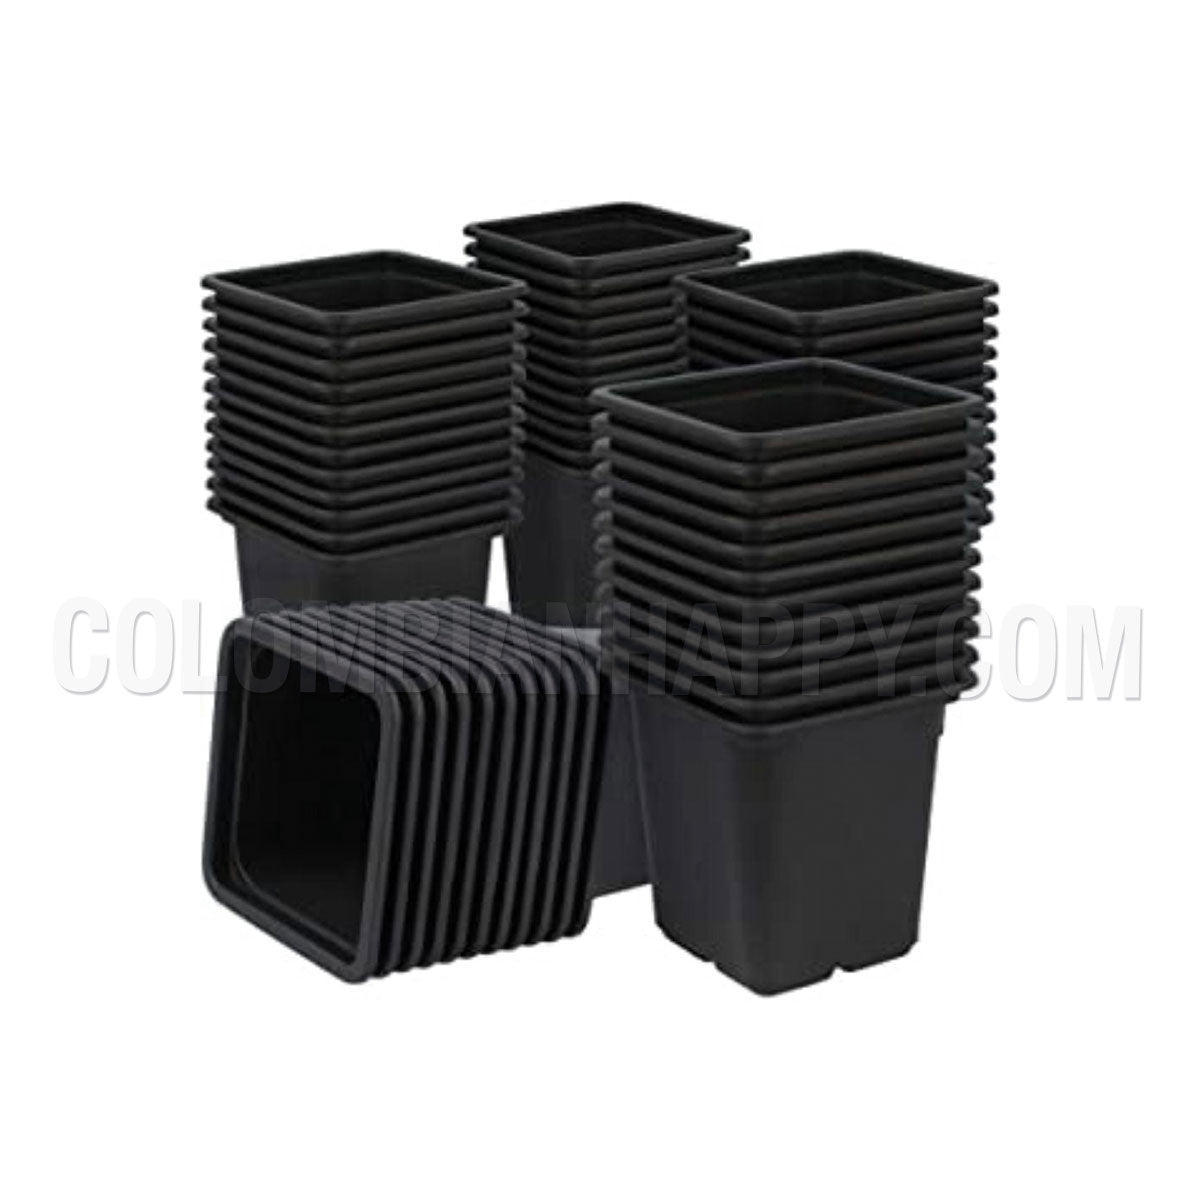 Maceta negra cuadrada de 550 cc (medio litro) Es una maceta de plástico ideal para las primeras fases de crecimiento en exterior Medida 9 x 9 x 9 cm